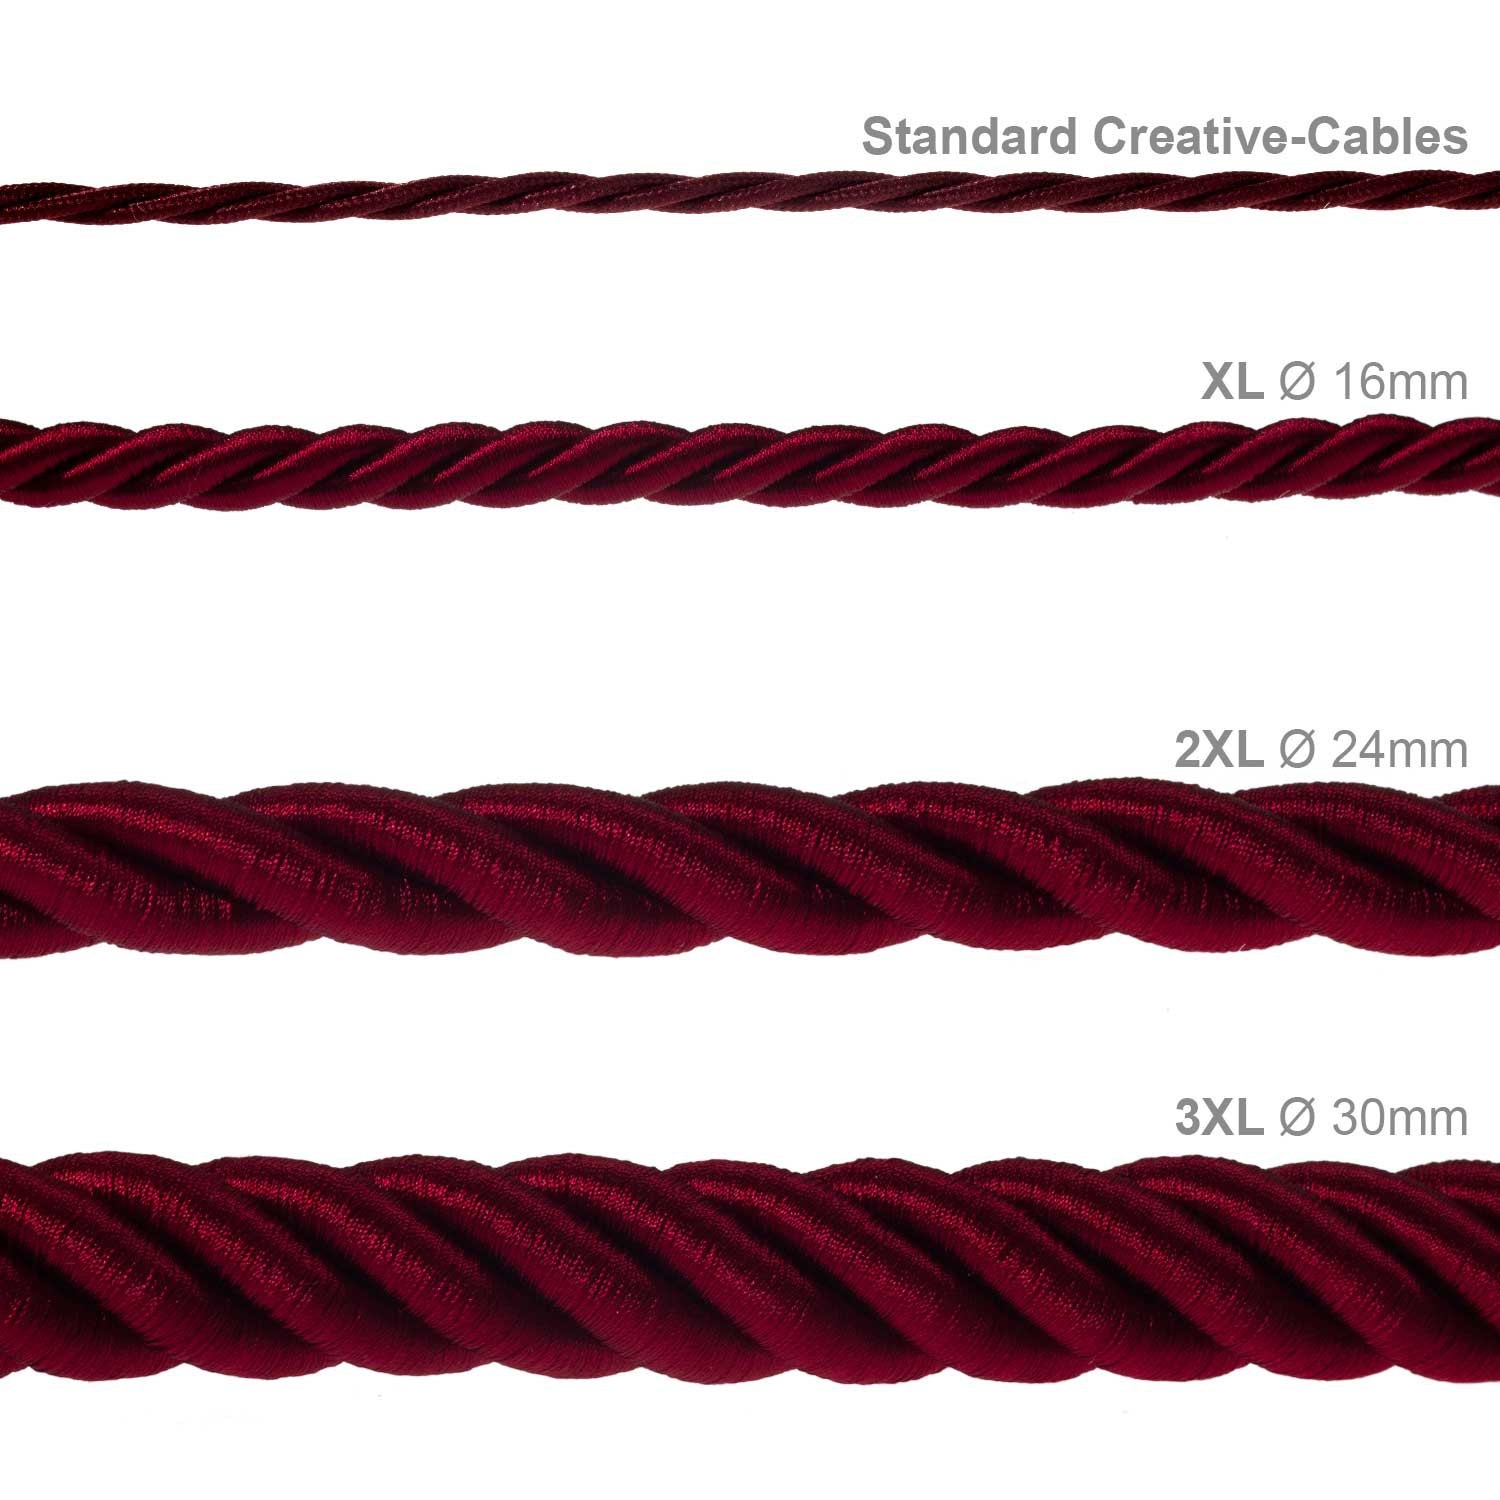 Electrische 2XL touwkabel, 3 x 0,75 mm. Binnenkabels bedekt met bordeaux textiel. Diameter 24 mm.